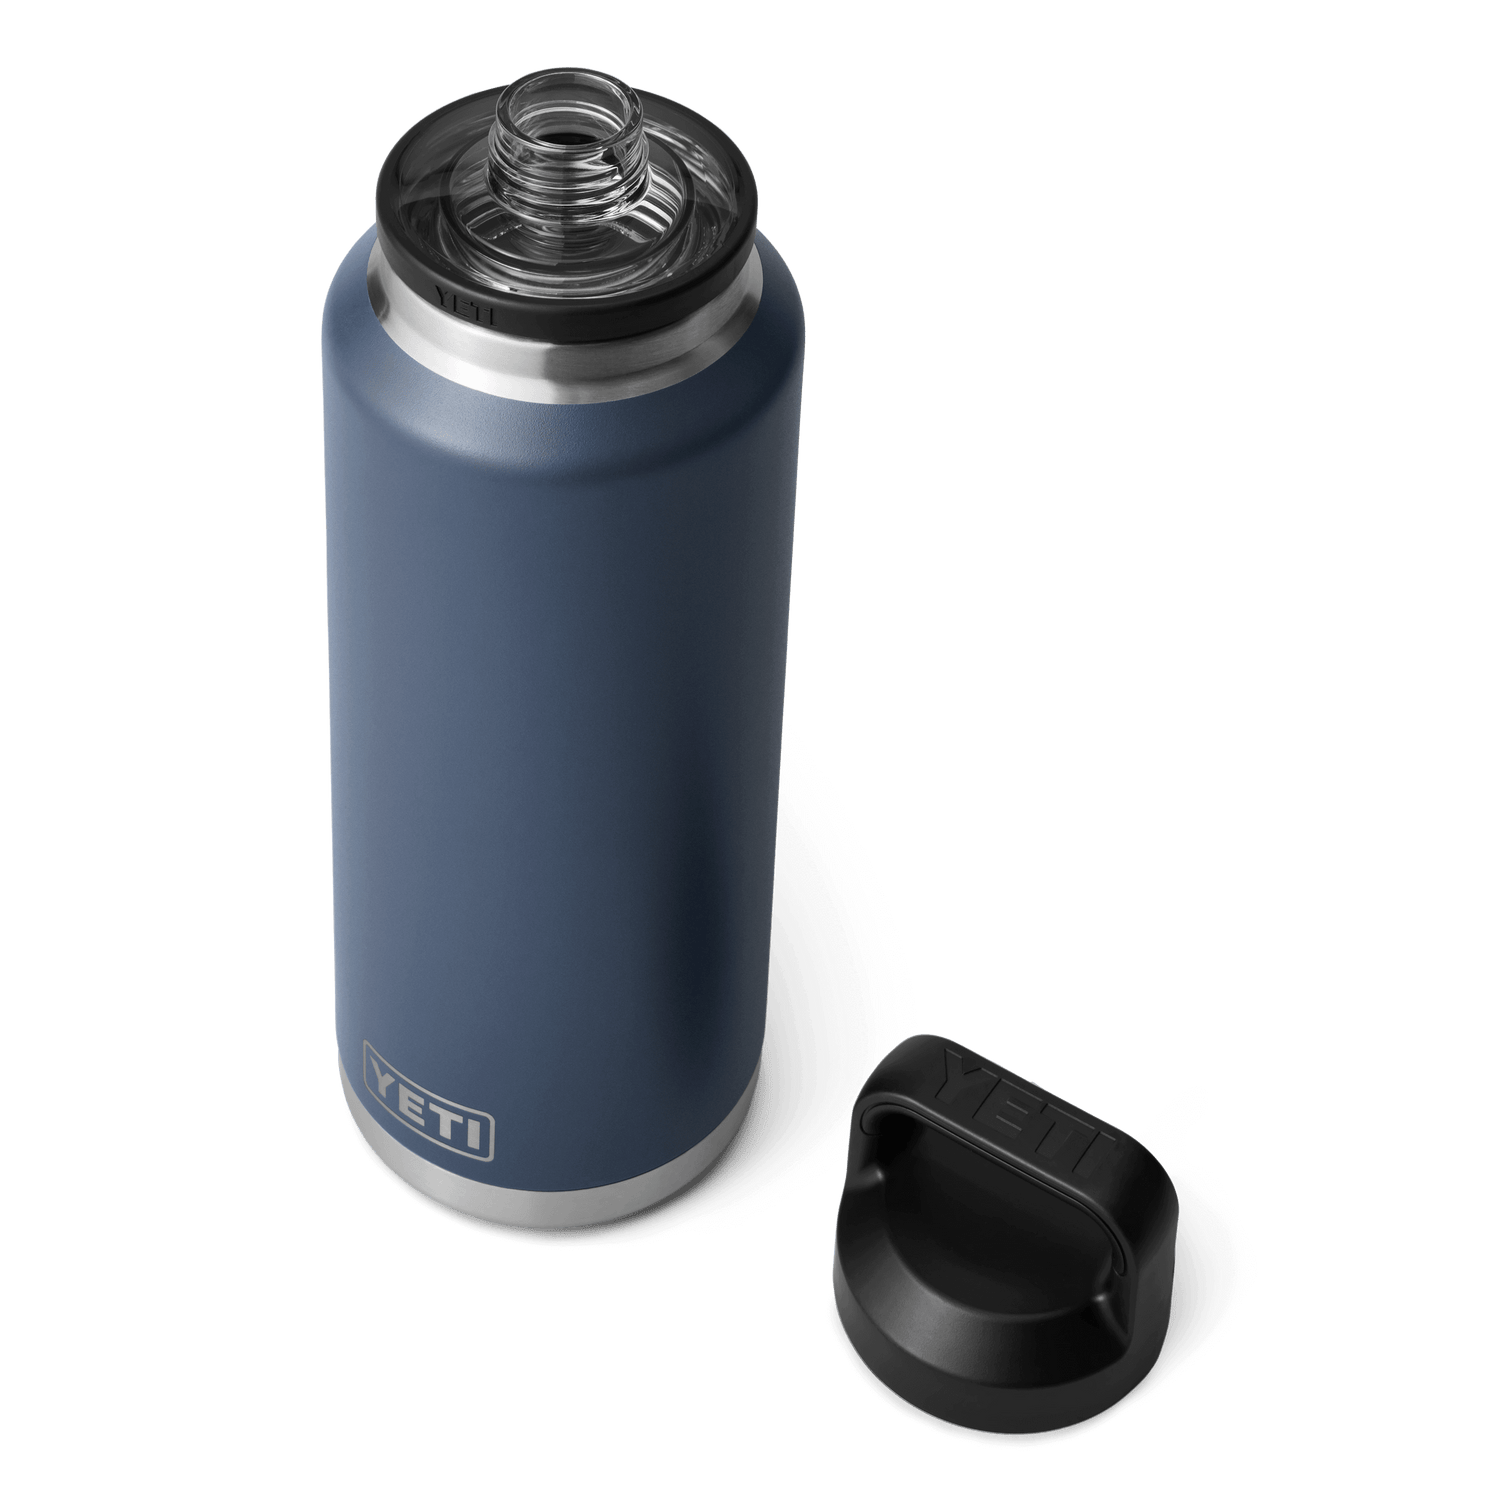 YETI Rambler® 46 oz Flasche (1,4 l) mit Chug-Verschluss Navy